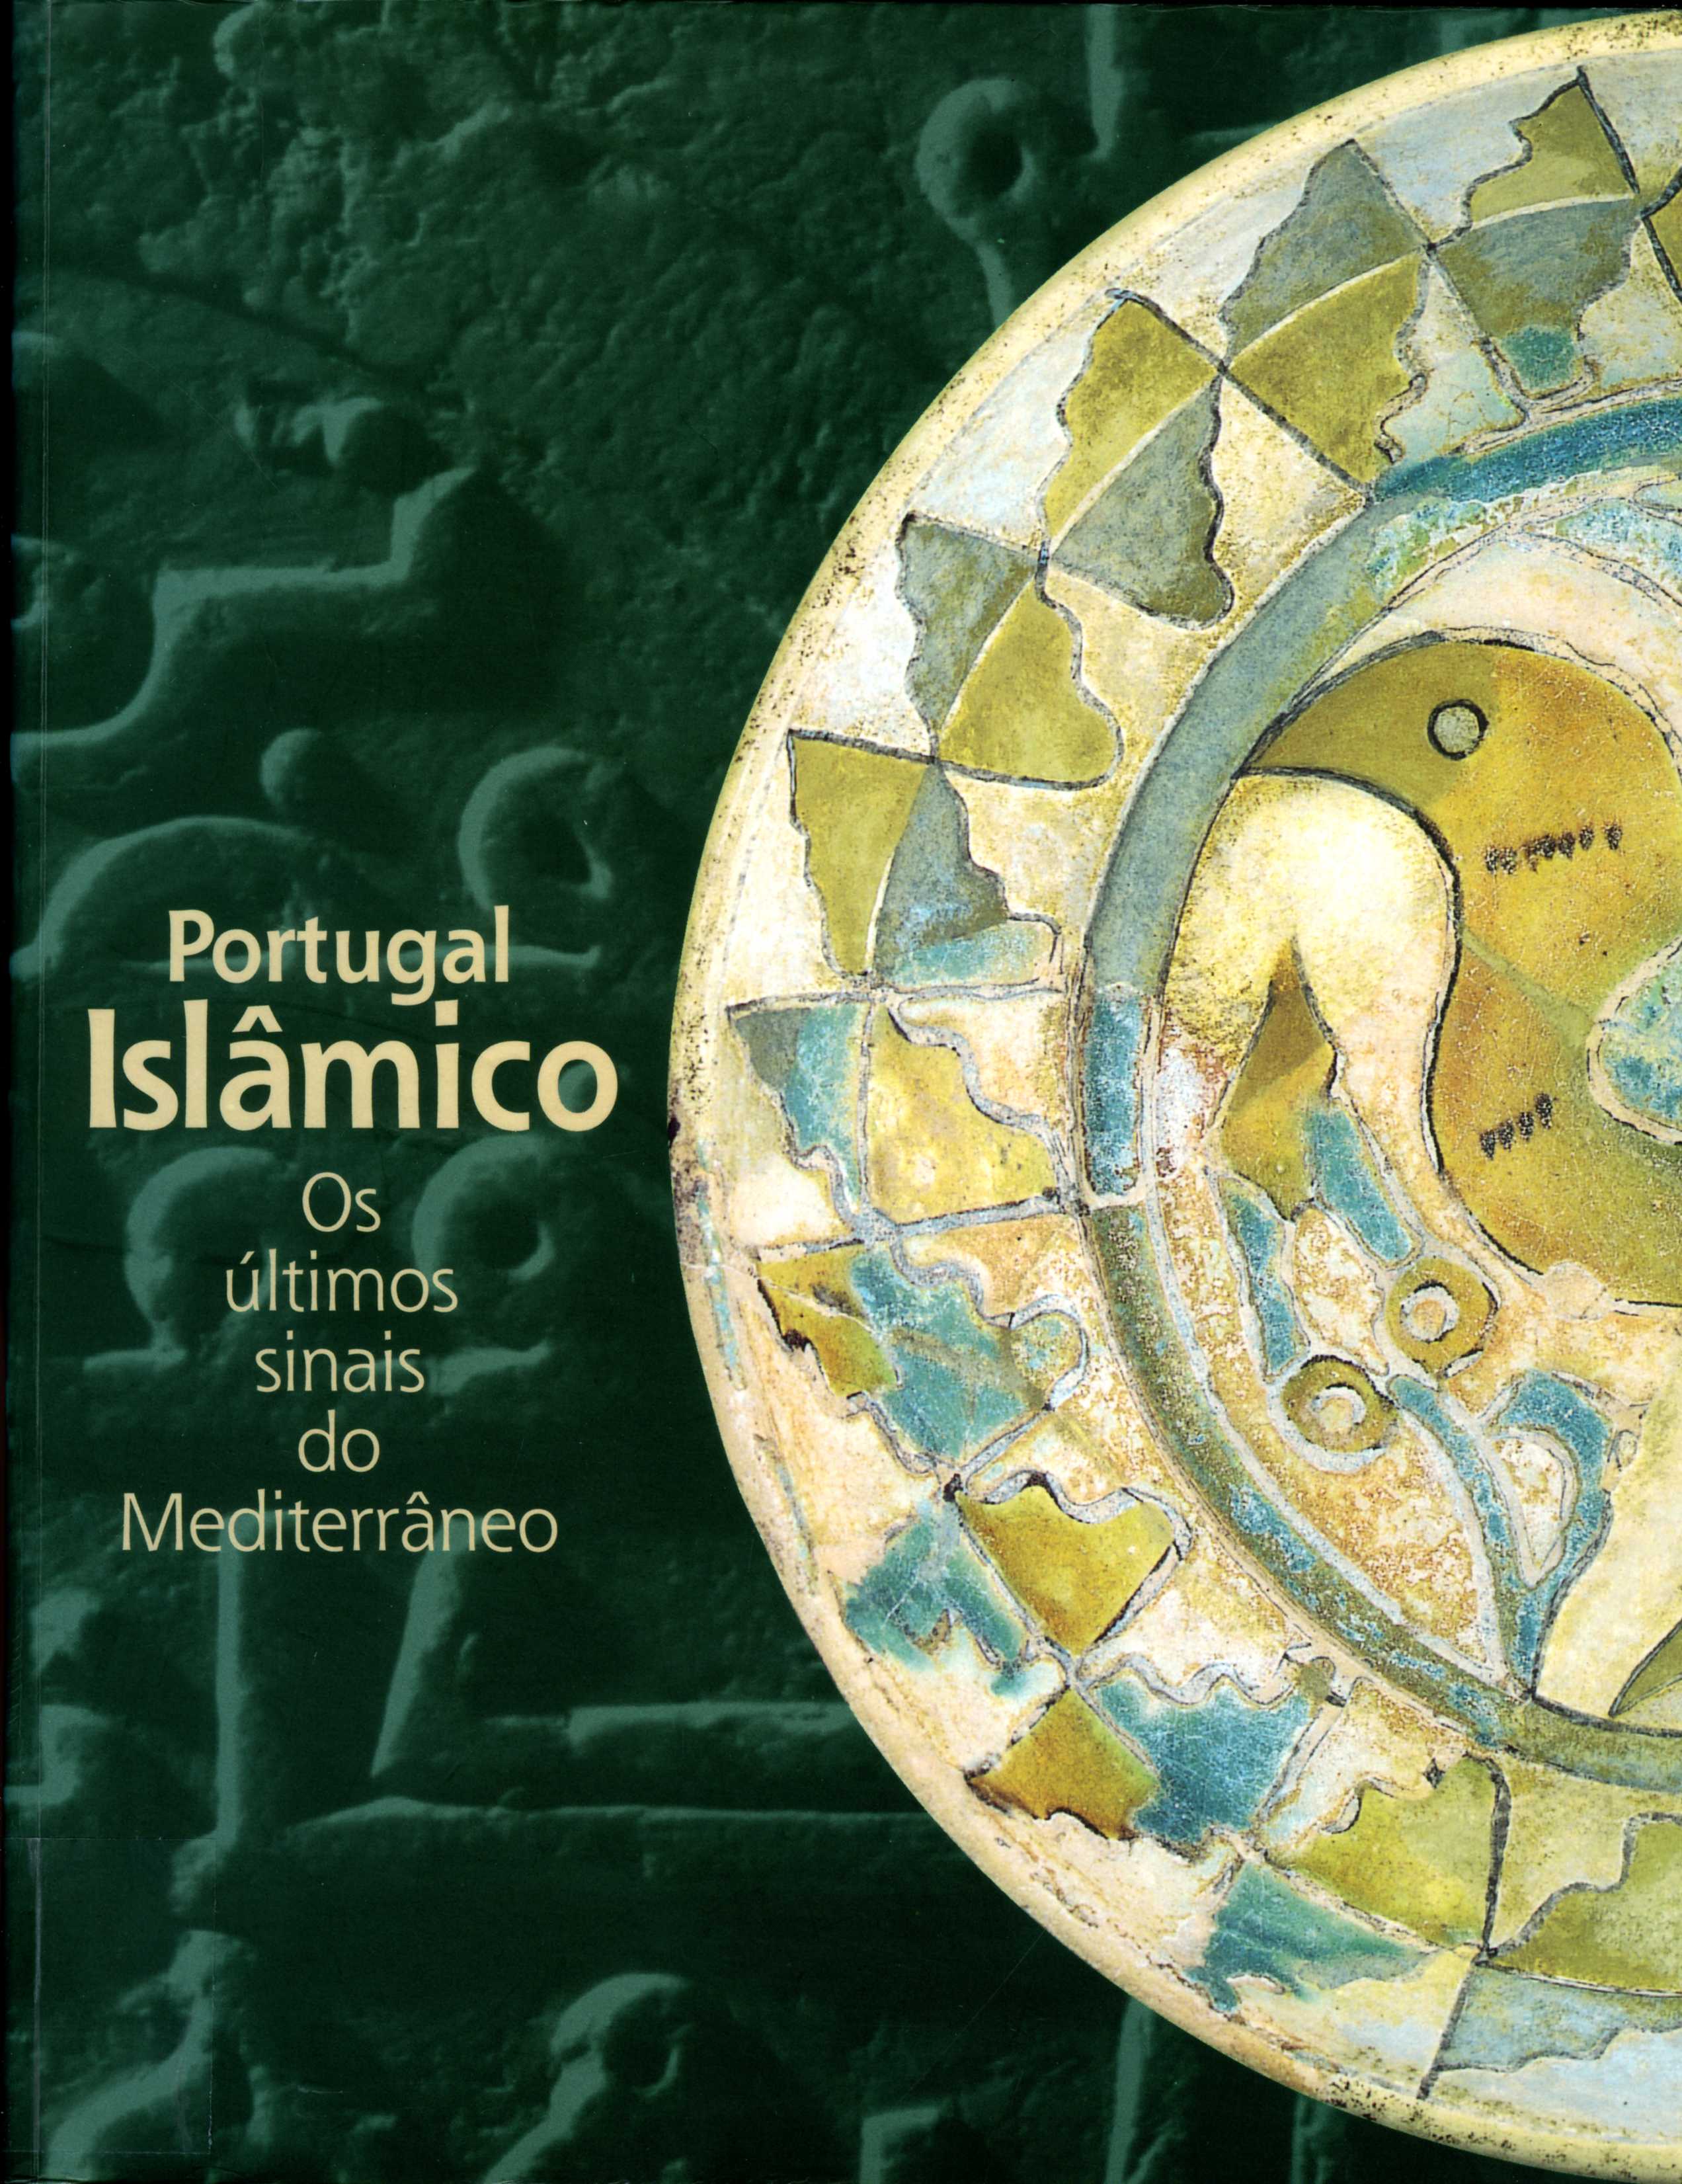 Rota cultural no Algarve desvenda legado islâmico que une Portugal e Espanha  - Mundo Português